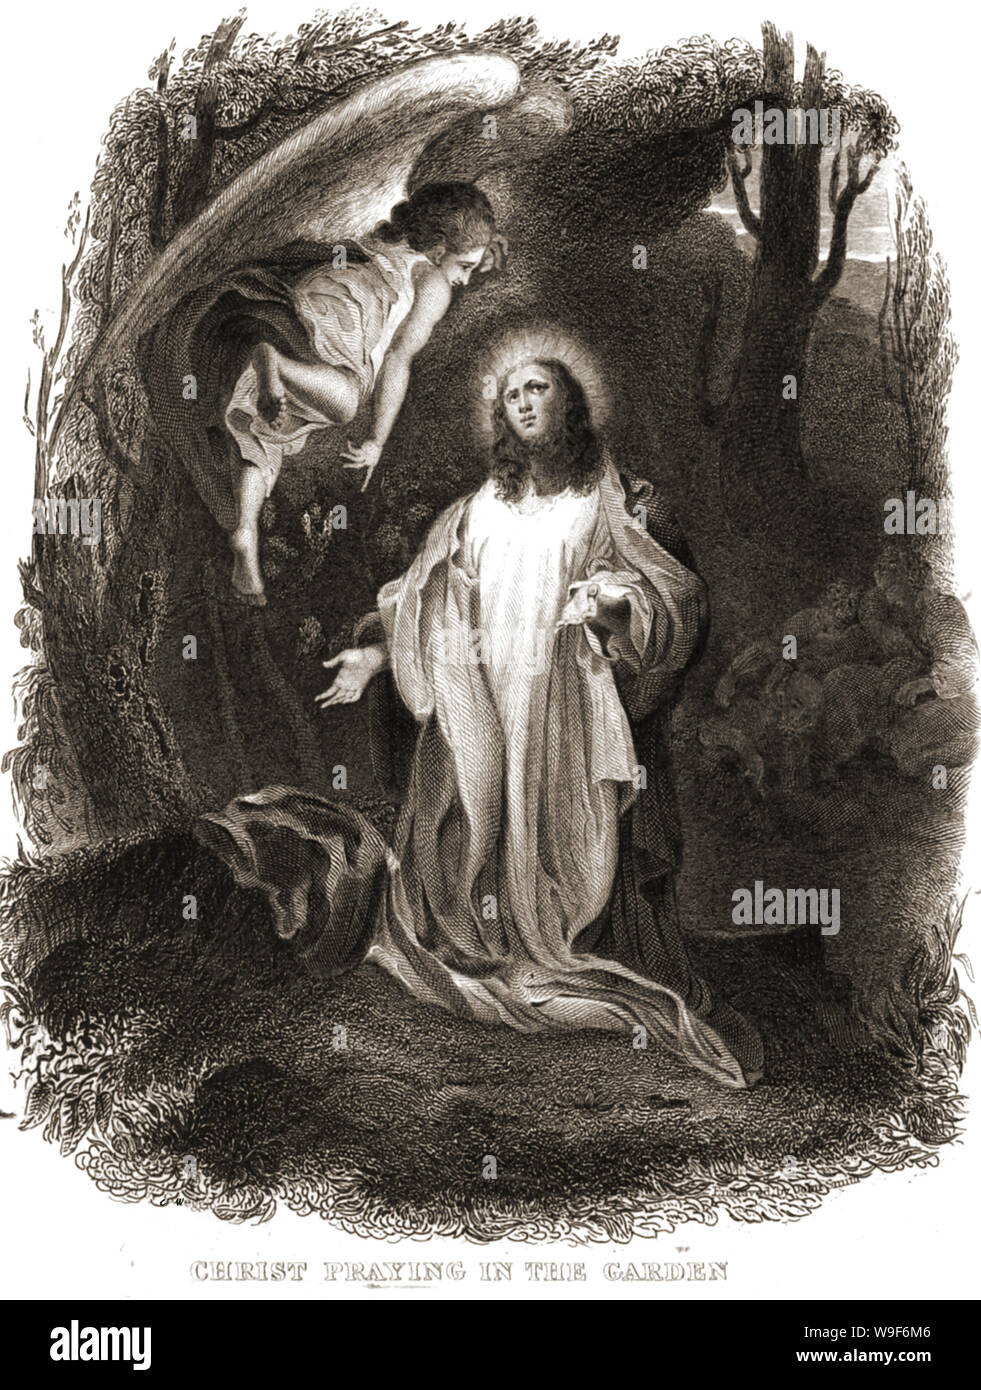 Le Christianisme / Religion - 1844 Illustration de Brown's Bible montrant Jésus Christ priant dans le jardin avec un ange planant au-dessus de lui. (L'Agonie au Jardin de Gethsémani) Banque D'Images